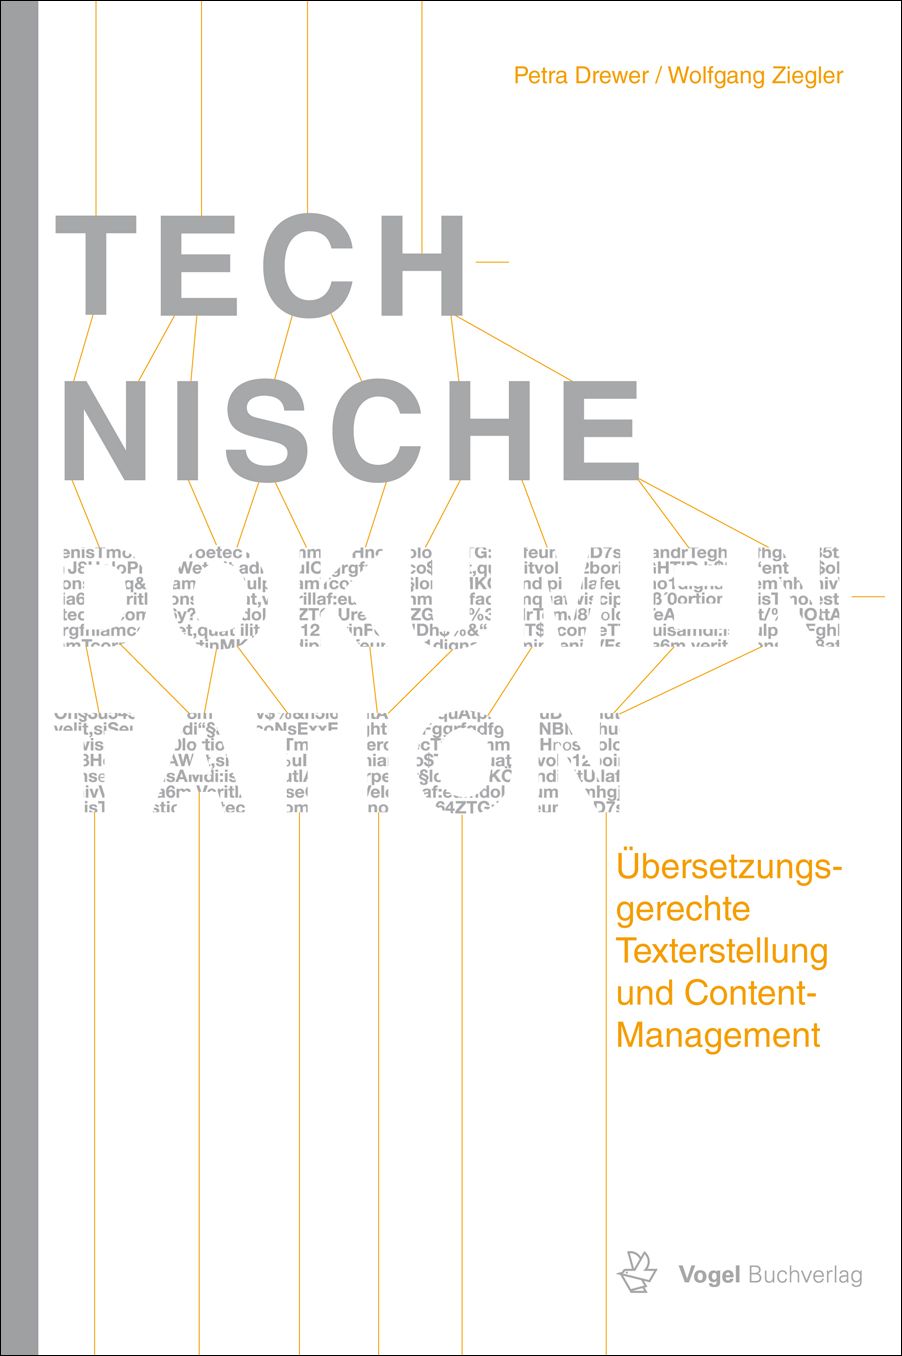 Das Fachbuch "Technische Dokumentation" von Petra Drewer und Wolfgang Ziegler